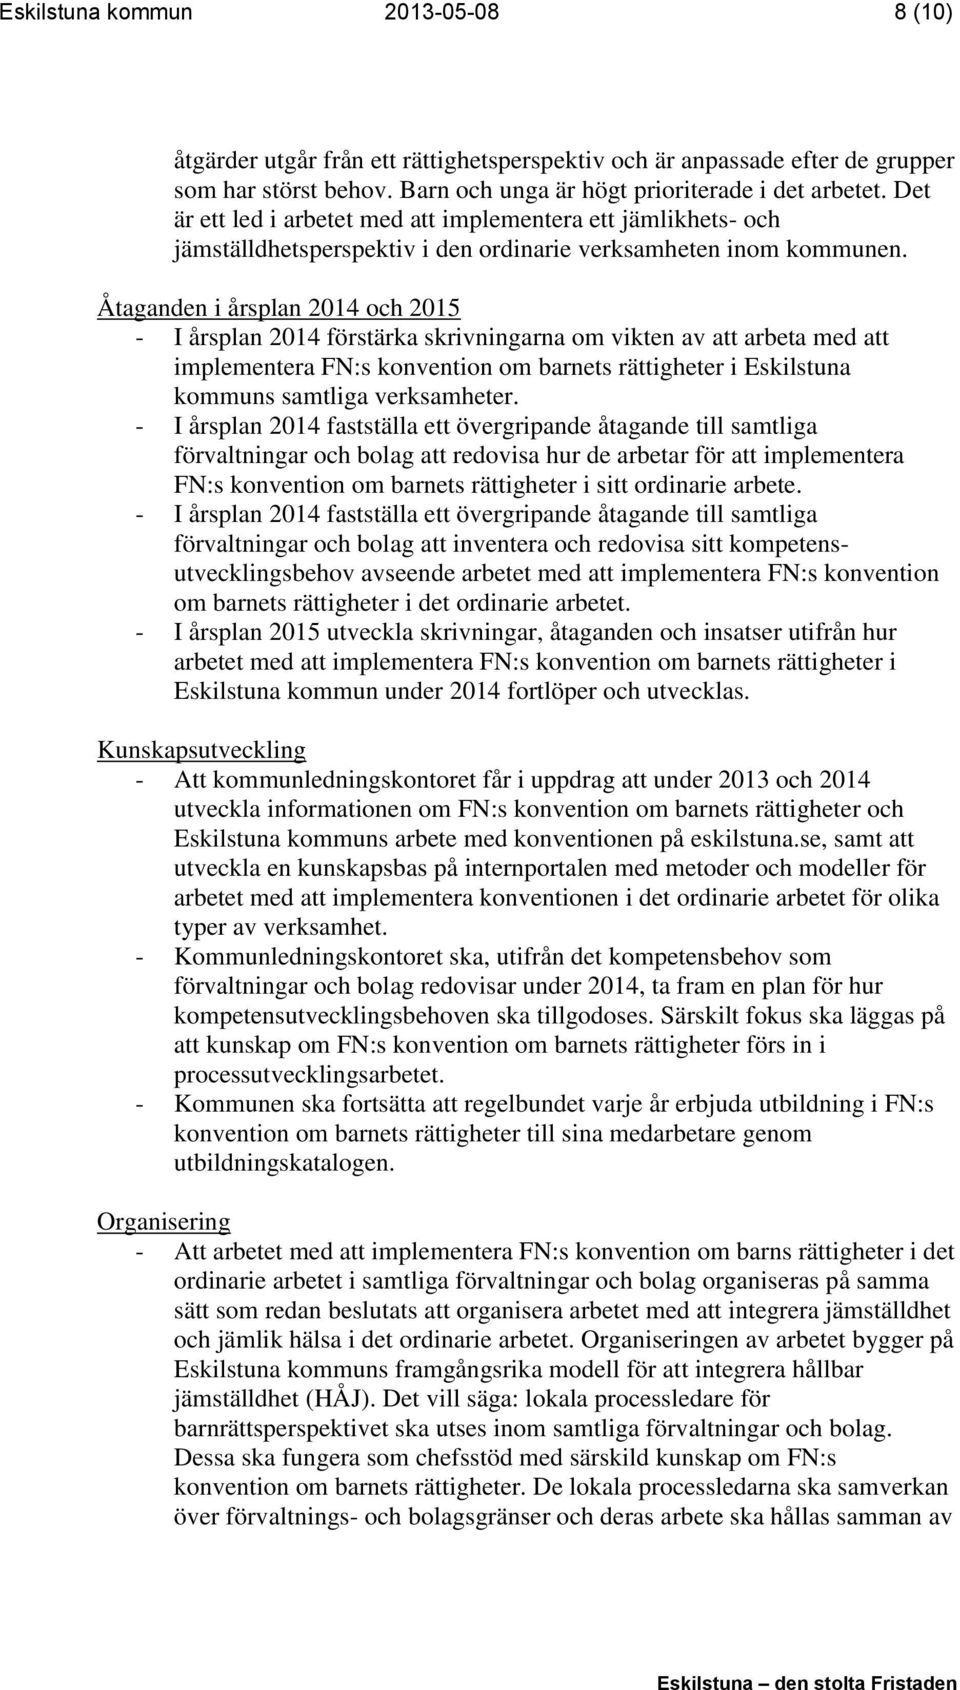 Åtaganden i årsplan 2014 och 2015 - I årsplan 2014 förstärka skrivningarna om vikten av att arbeta med att implementera FN:s konvention om barnets rättigheter i Eskilstuna kommuns samtliga